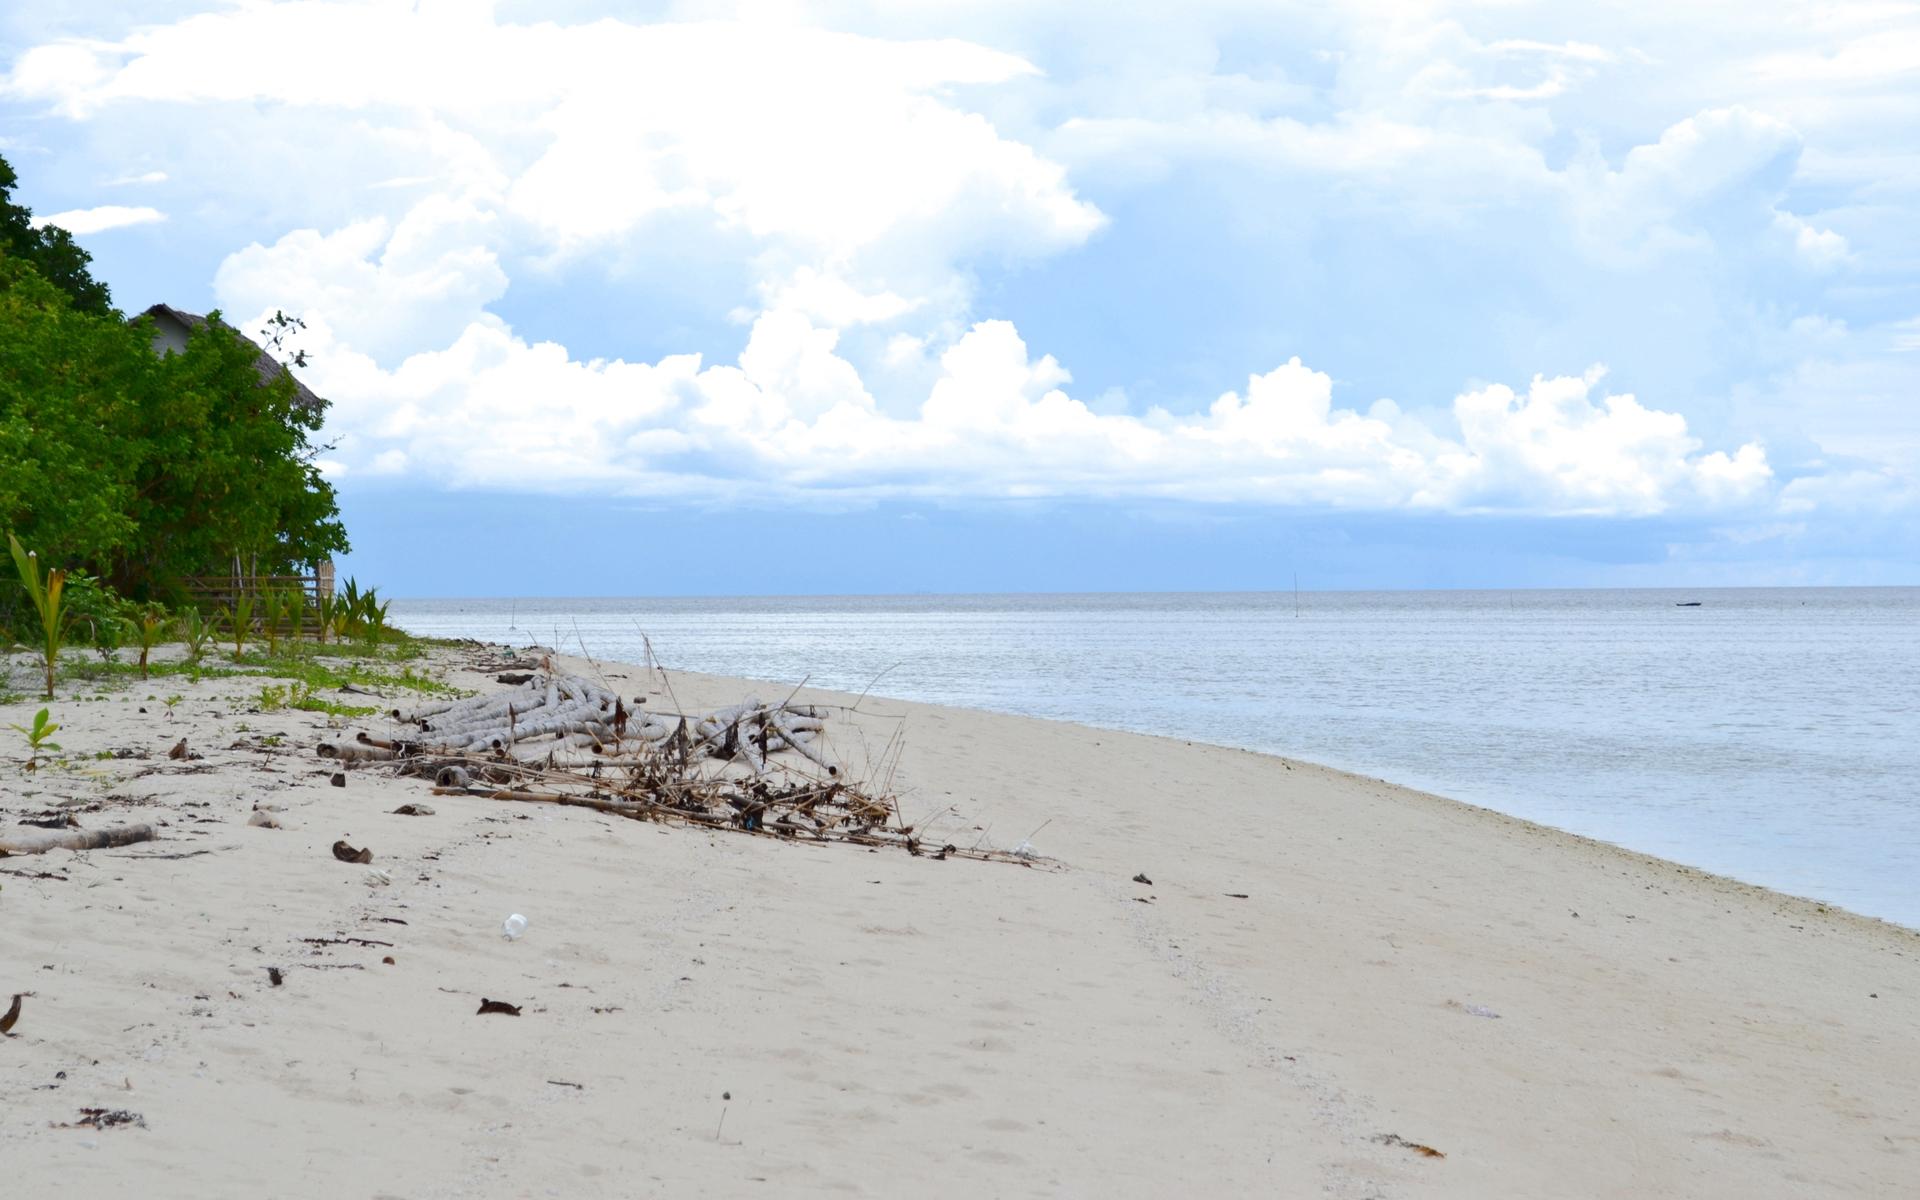 Canigao Island Beaches, Leyte, Philippines